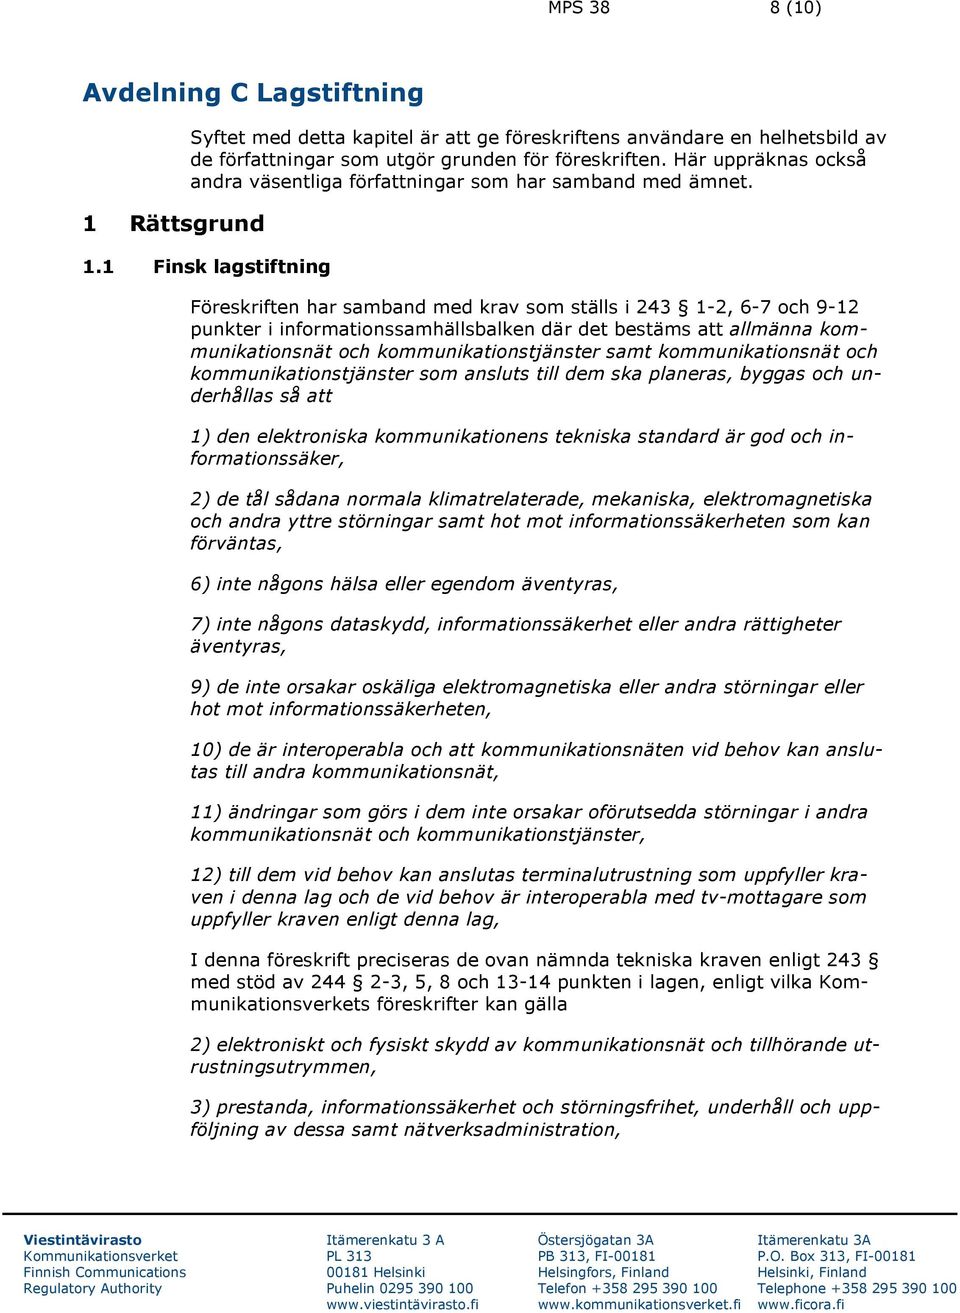 1 Finsk lagstiftning Föreskriften har samband med krav som ställs i 243 1-2, 6-7 och 9-12 punkter i informationssamhällsbalken där det bestäms att allmänna kommunikationsnät och